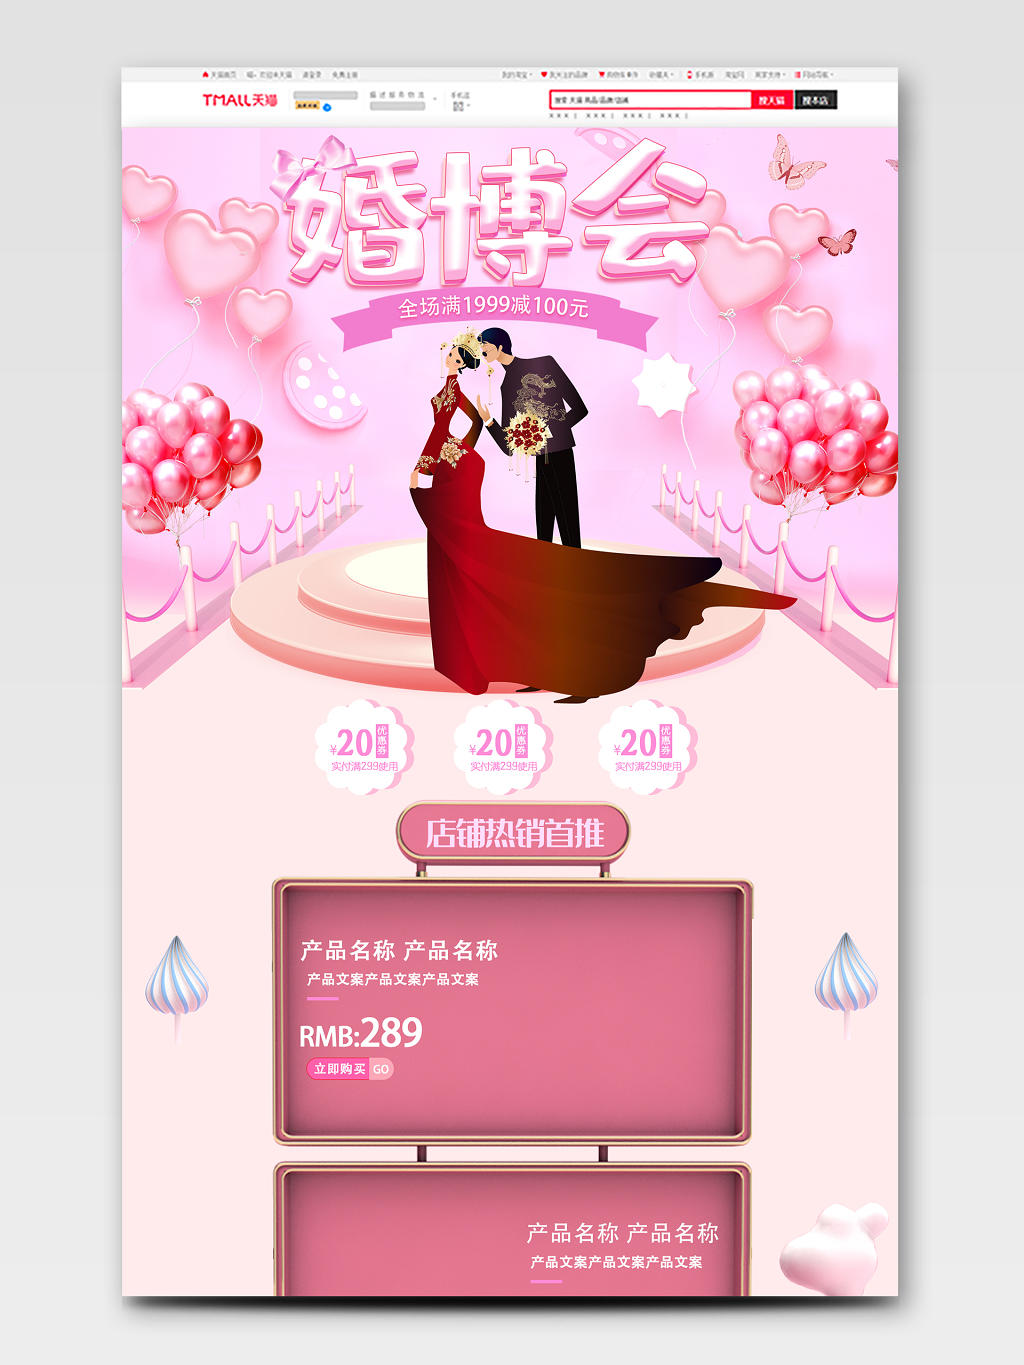 电商淘宝时尚婚礼婚庆结婚类通用婚博会粉红气球背景全套首页